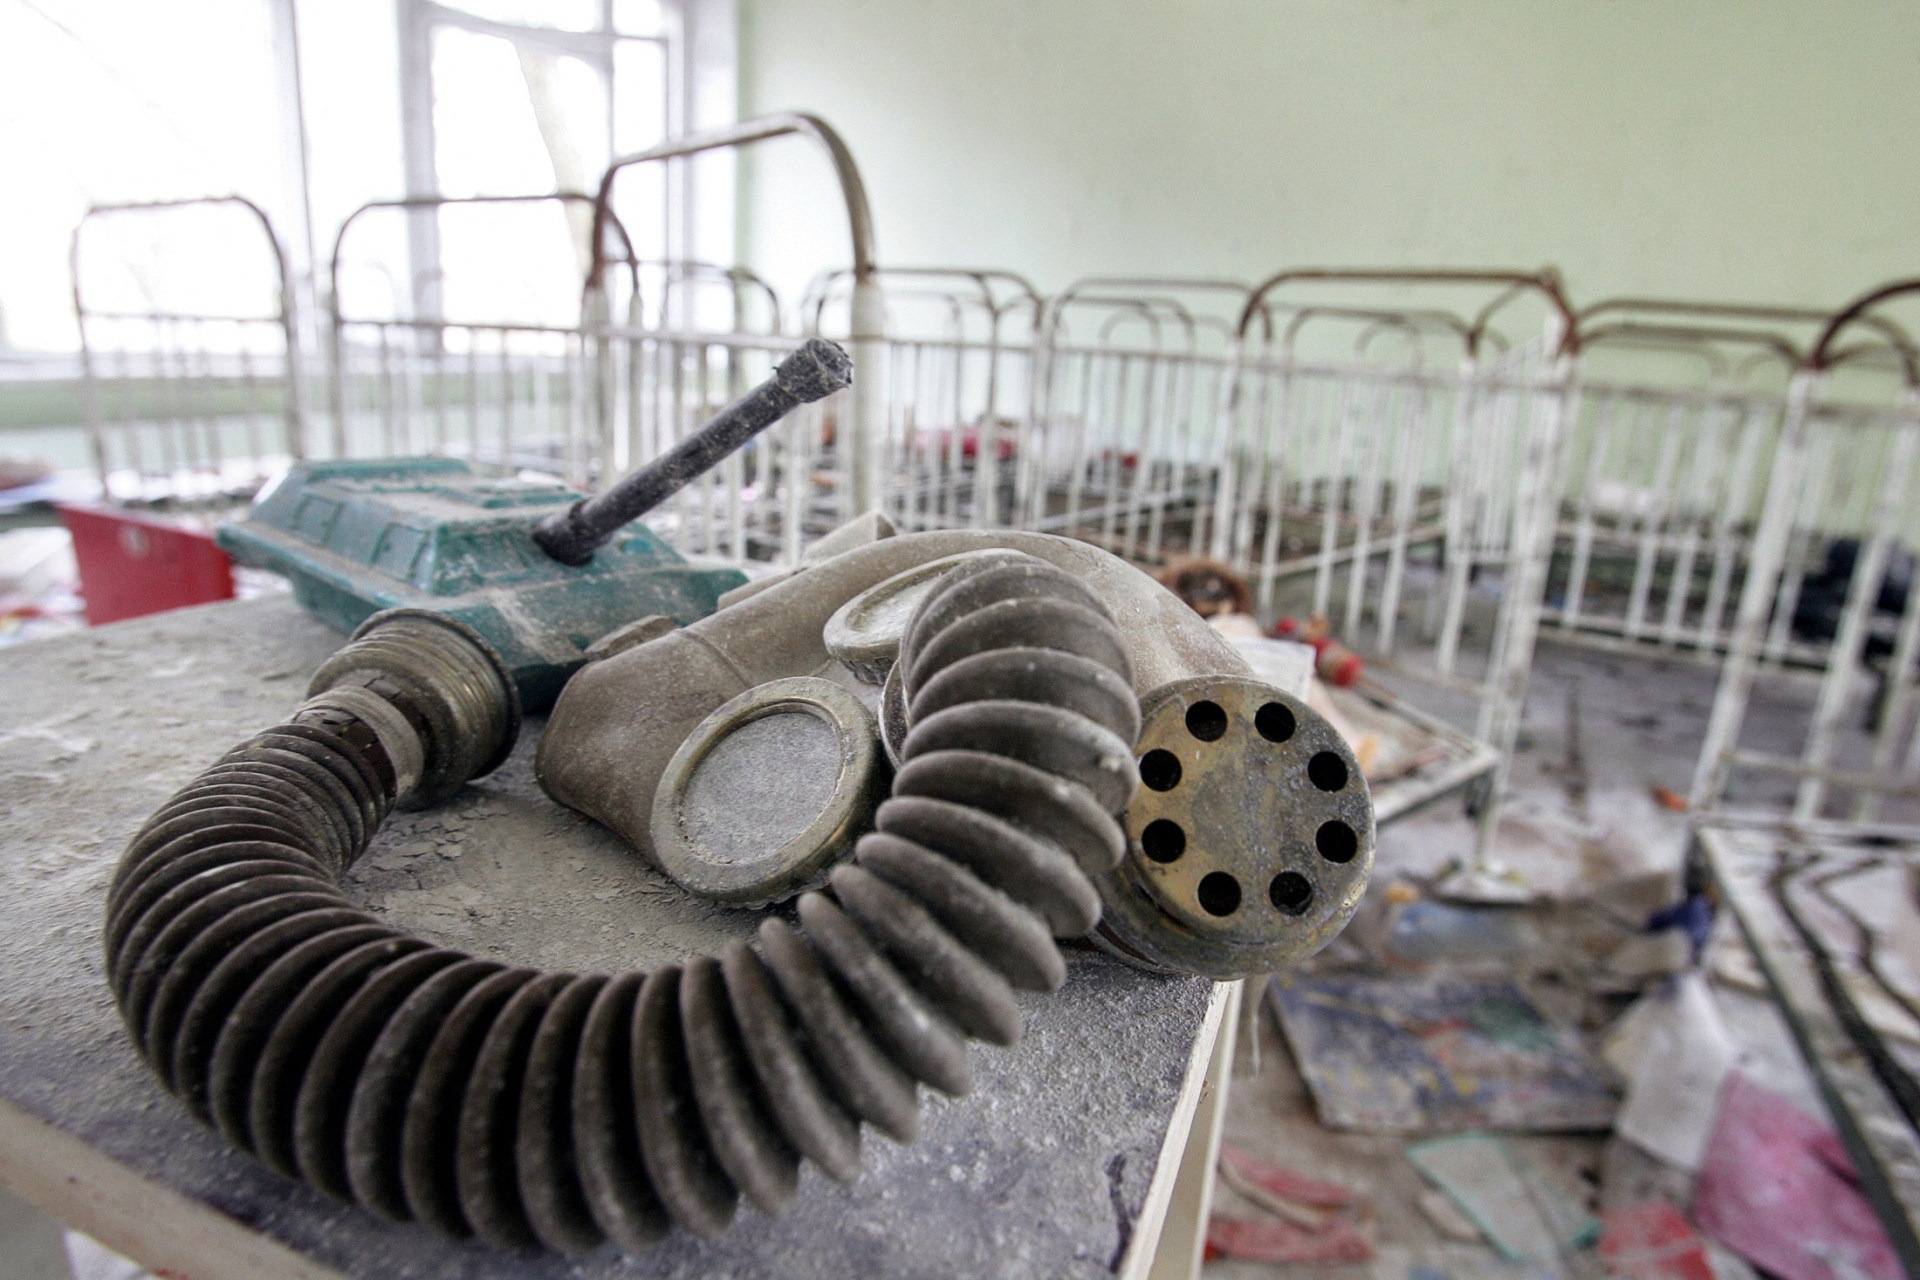 <p>La catastrophe de Tchernobyl, en avril 1986, a donné lieu à une tragédie d'une ampleur véritablement effrayante, qui a entraîné l'évacuation totale de Prypiat, la ville la plus proche de la centrale nucléaire sinistrée. Aujourd'hui, c'est une ville fantôme contaminée, rappelant de manière effroyable l'un des épisodes les plus effrayants de l'histoire moderne.</p>